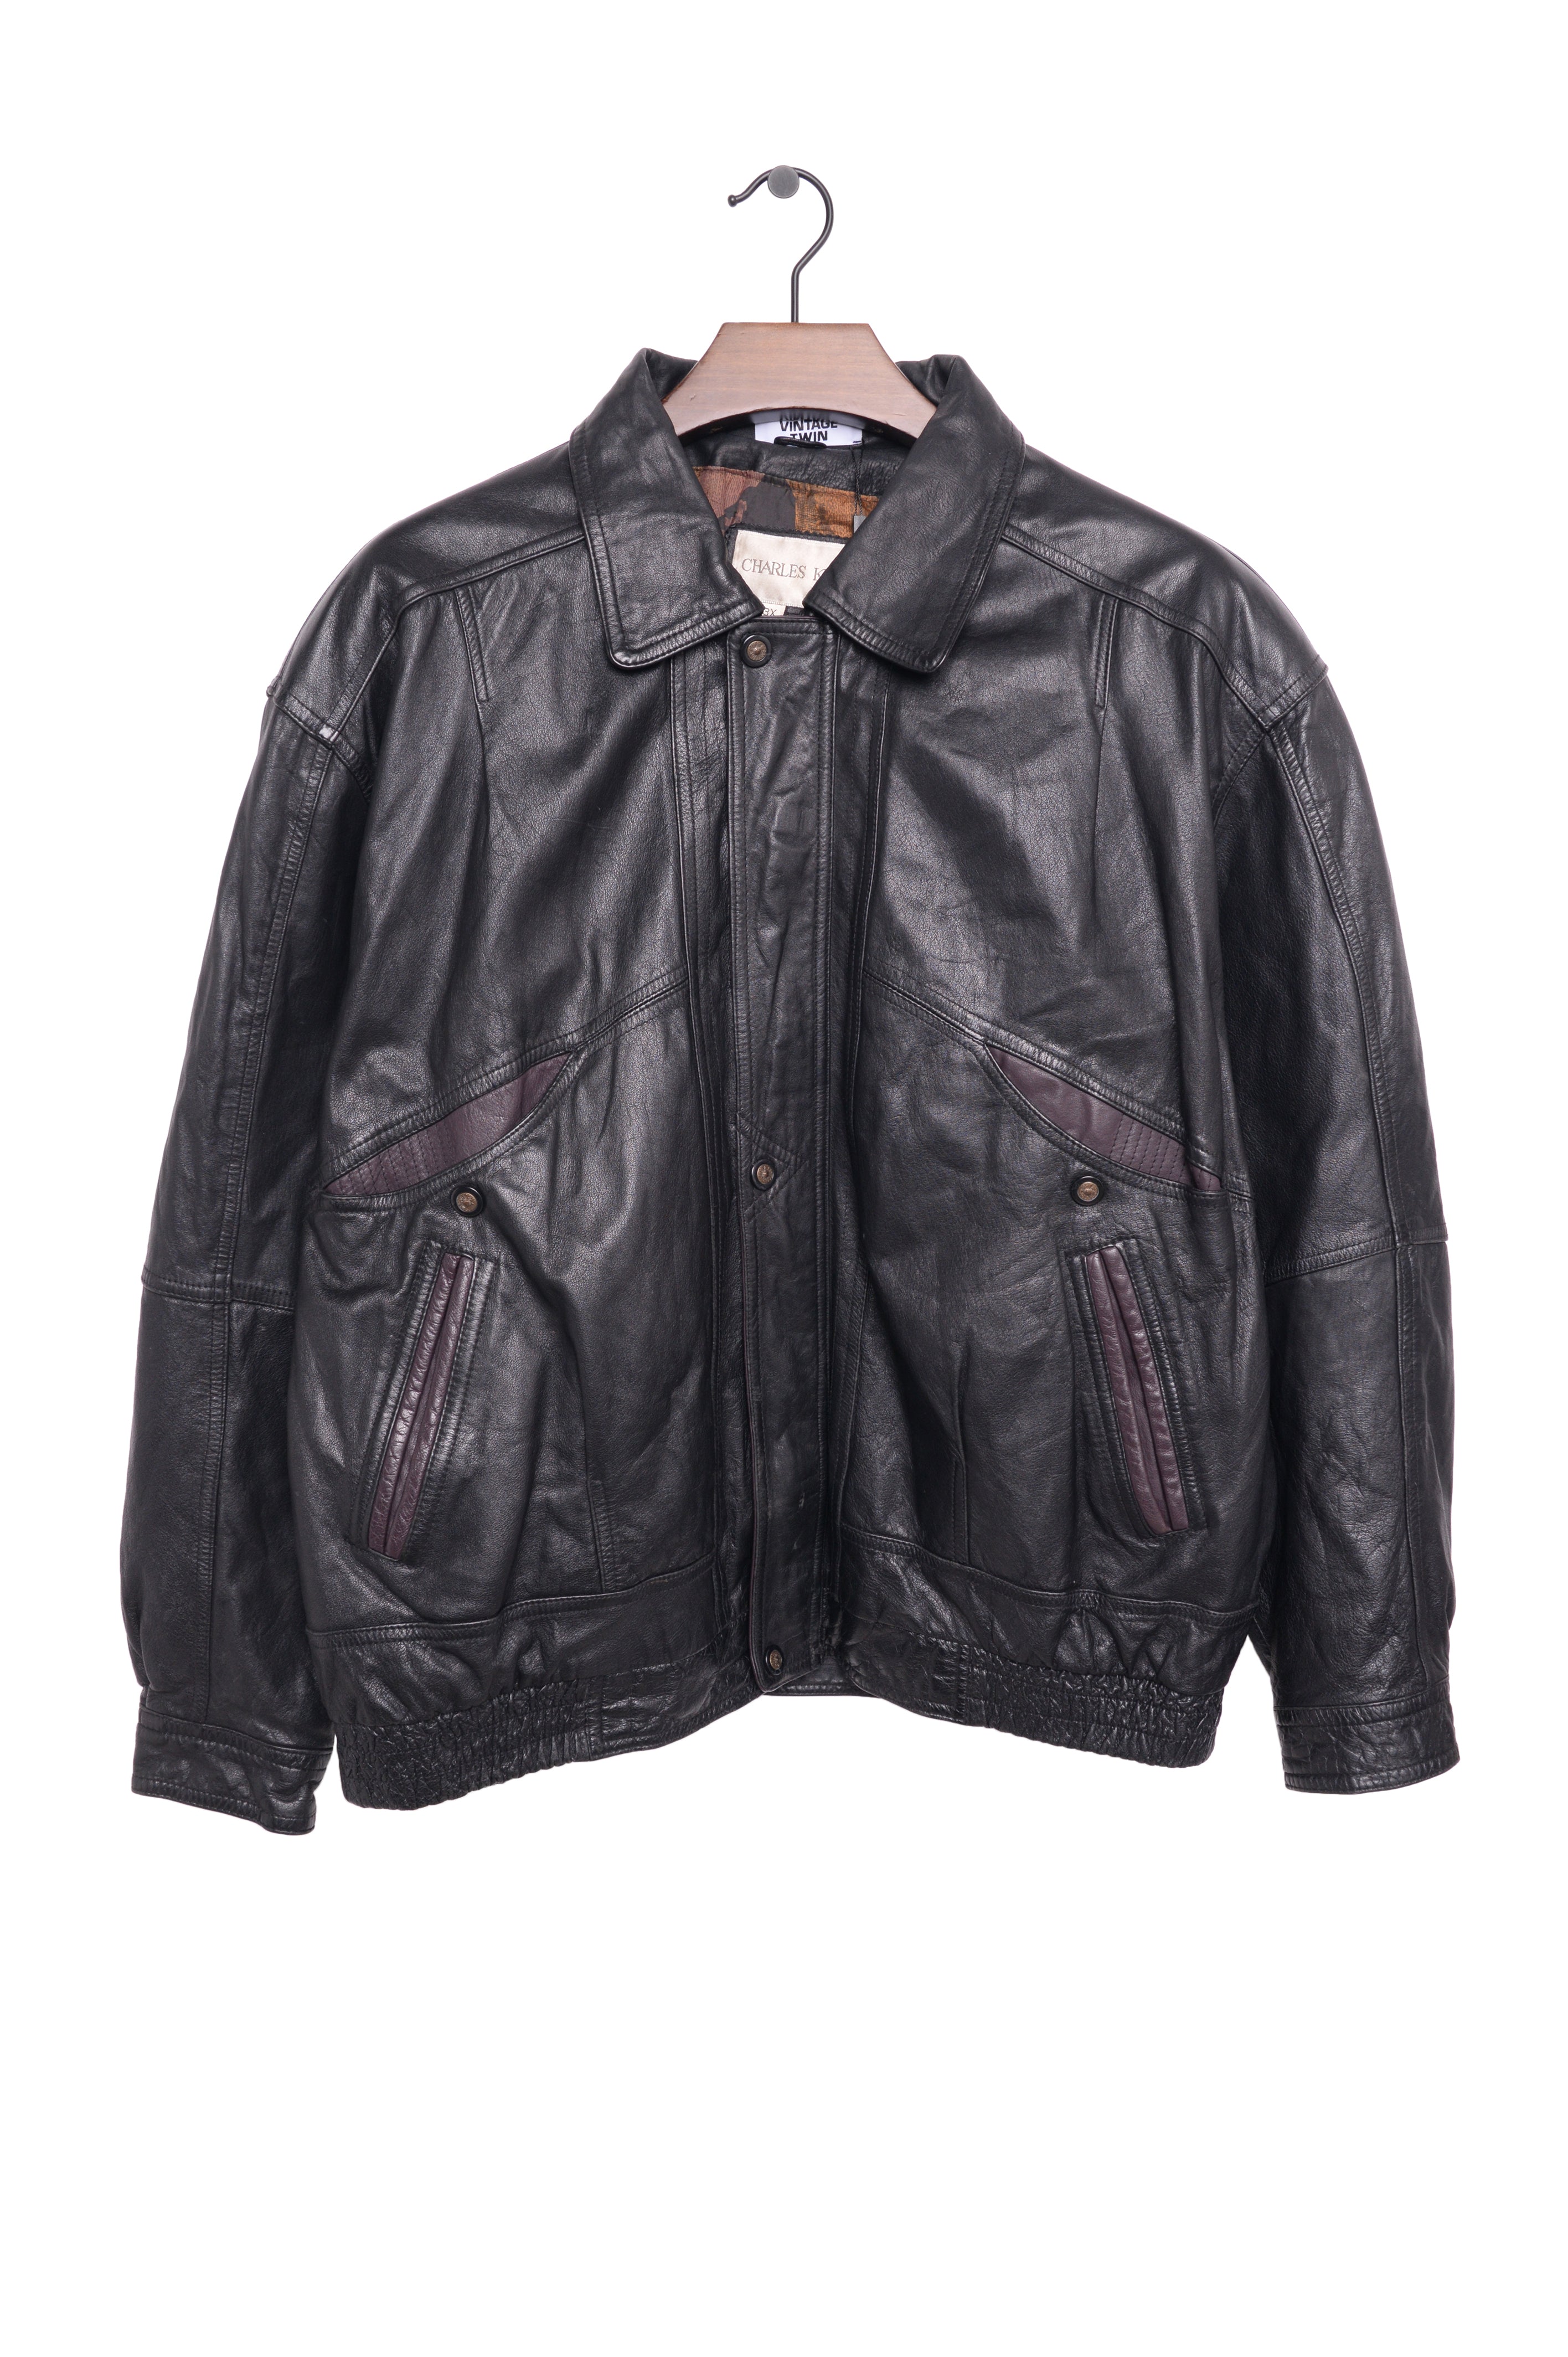 11,750円Varorav Real Leather ジャケット